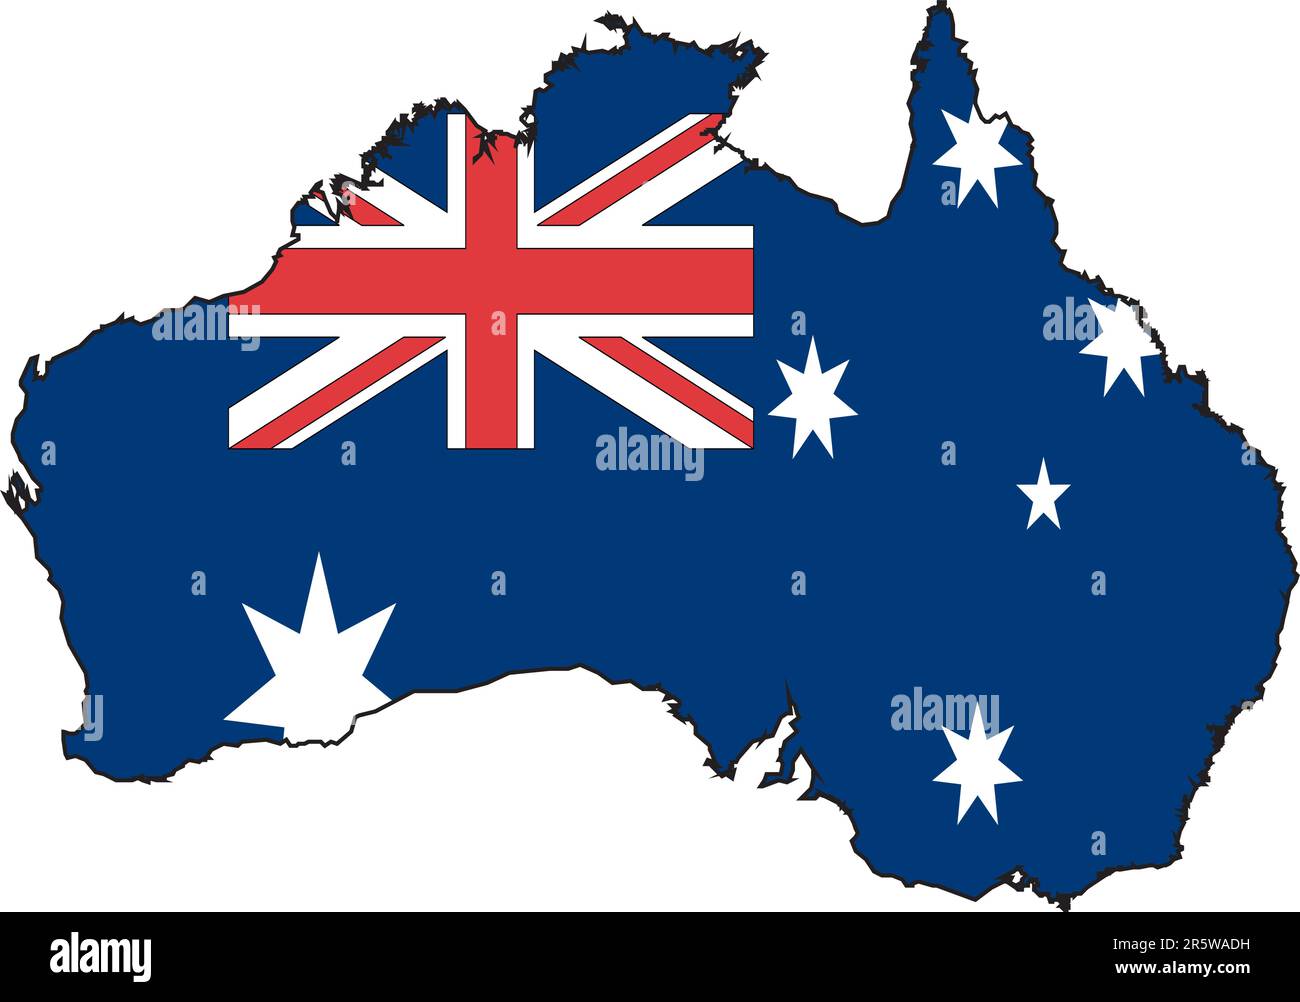 Darstellungsvektor einer Karte und Flagge aus Australien Stock Vektor